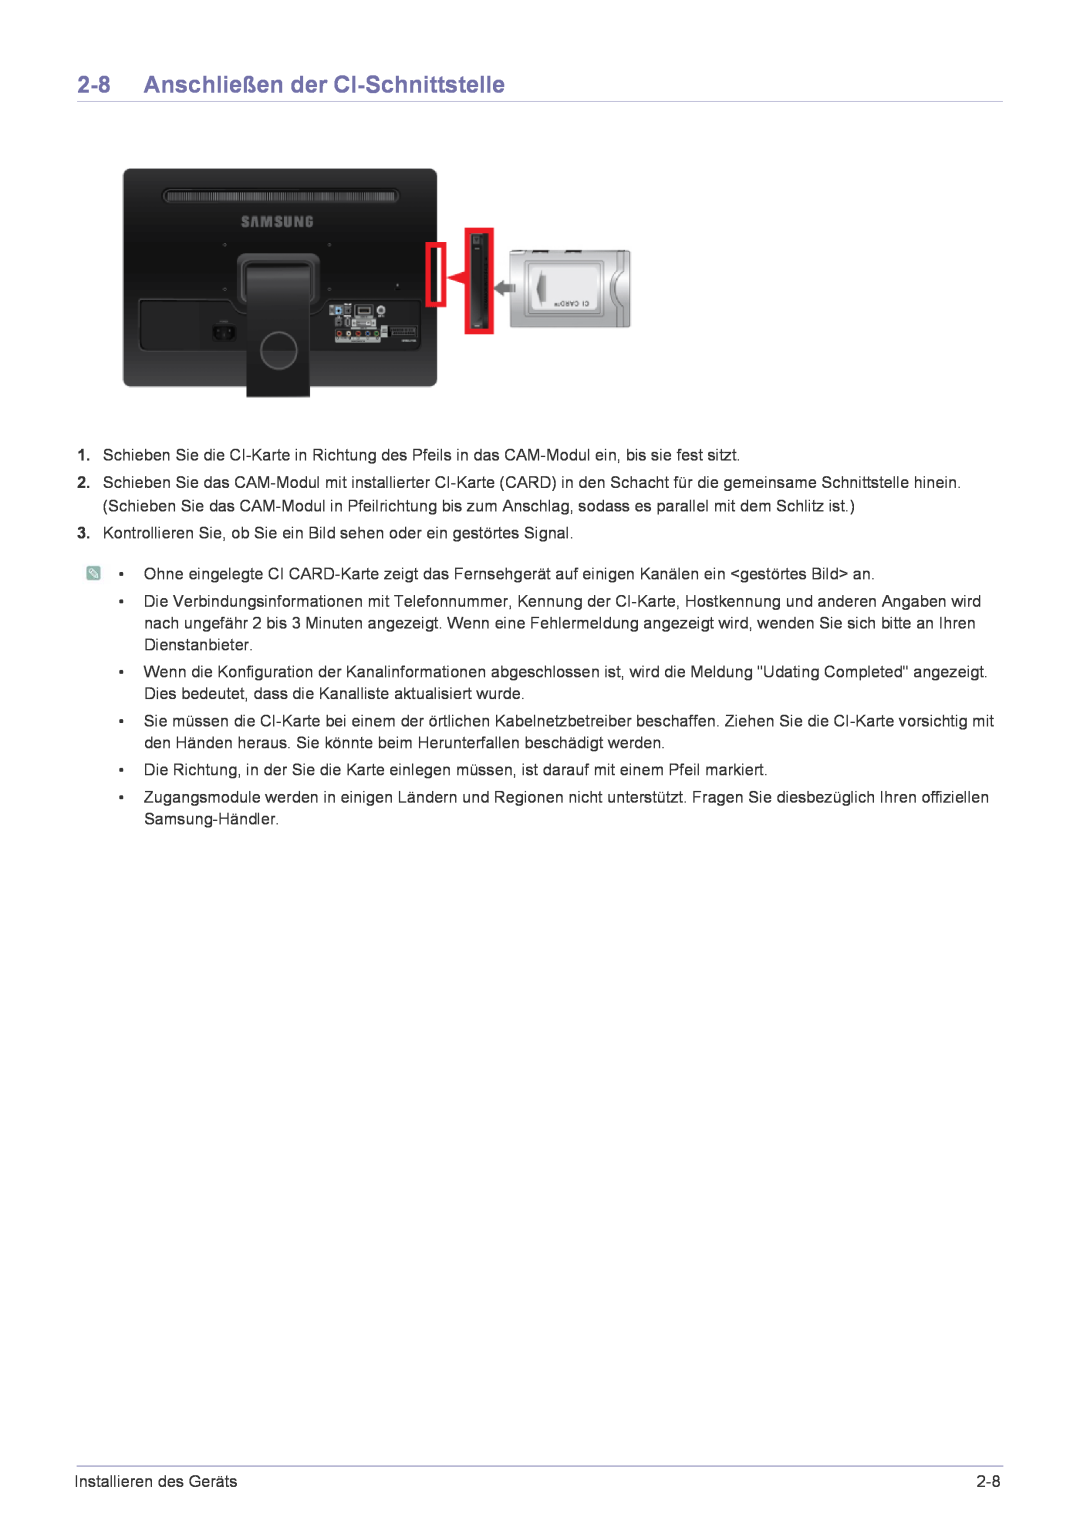 Samsung LS22FMDGF/EN manual Anschließen der CI-Schnittstelle 